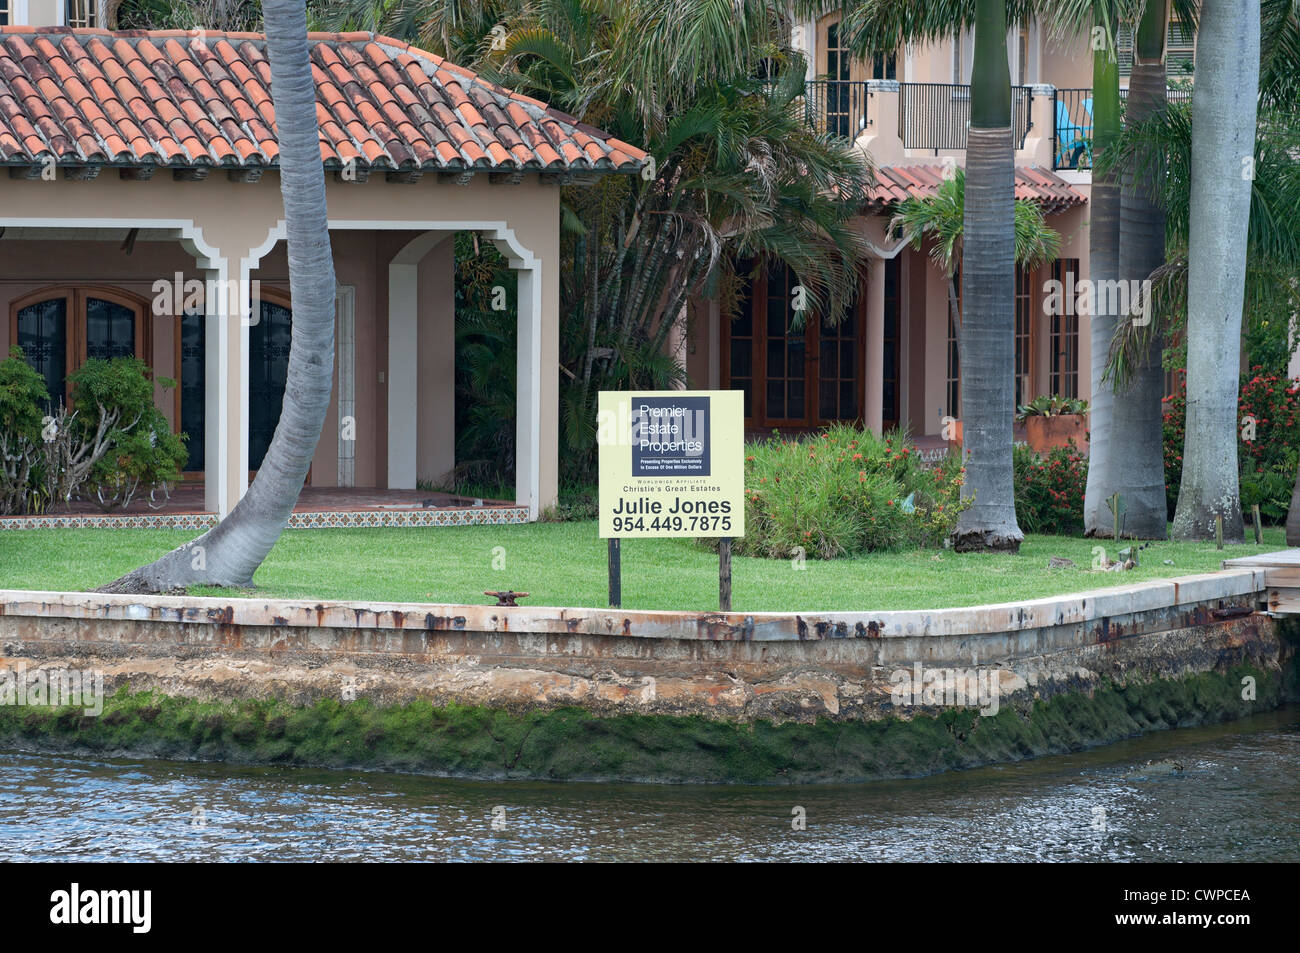 Eine Kreuzfahrt flussaufwärts von Fort Lauderdale, Florida New River, nimmt Bootsfahrer vorbei an luxuriösen Häuser, Yachten und geschäftigen Leben der Stadt. Stockfoto